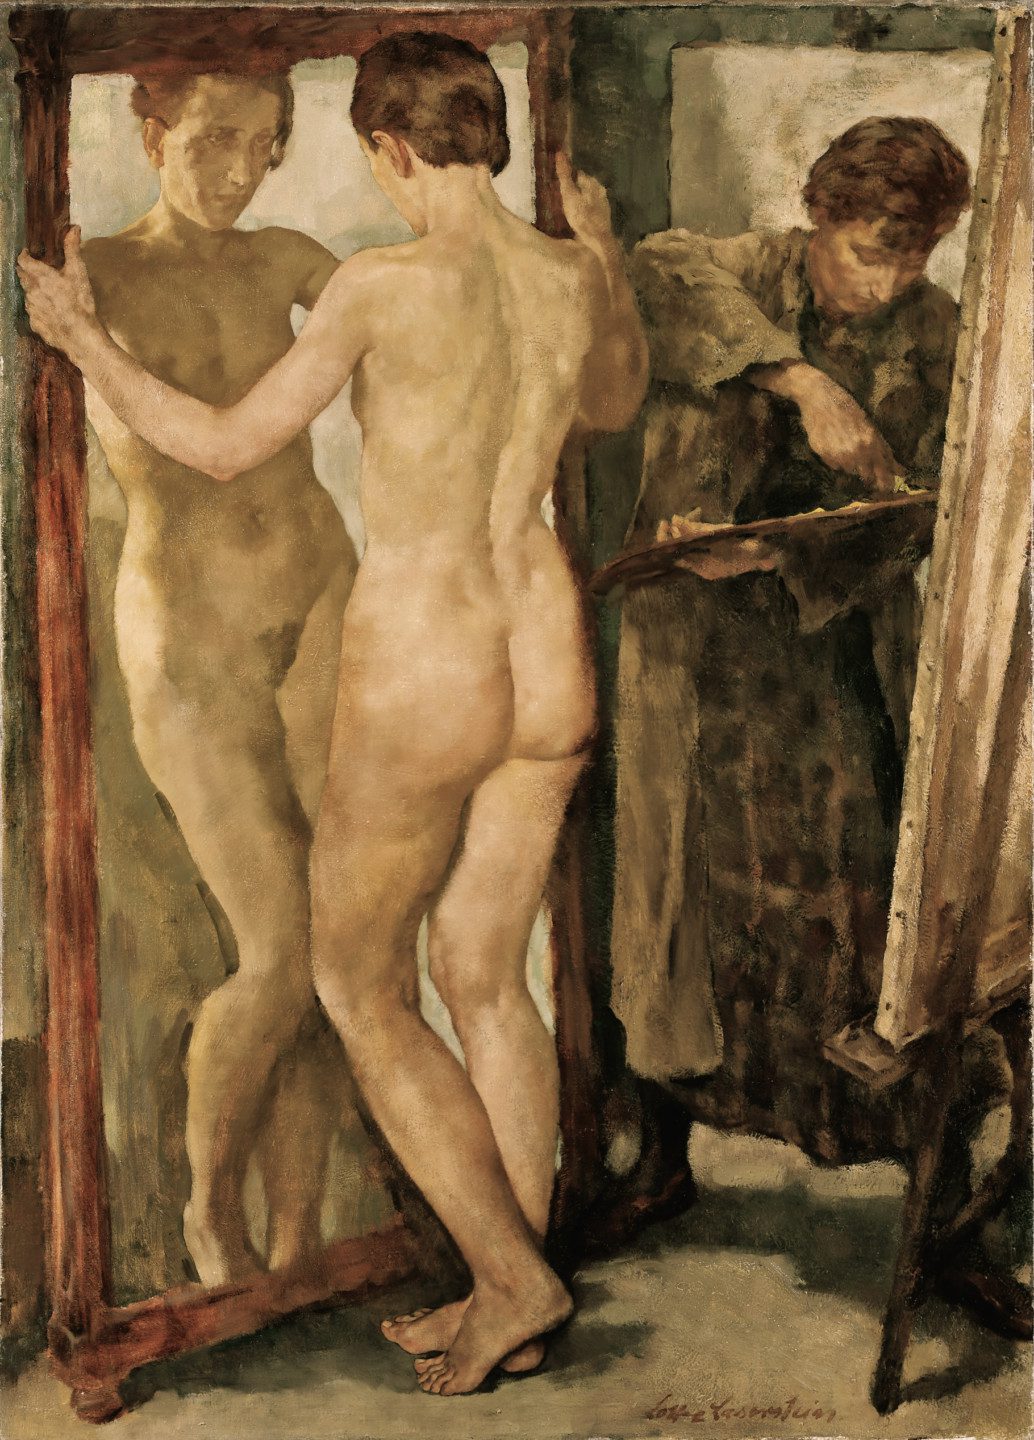 konstnär som målar med naken modell framför spegel